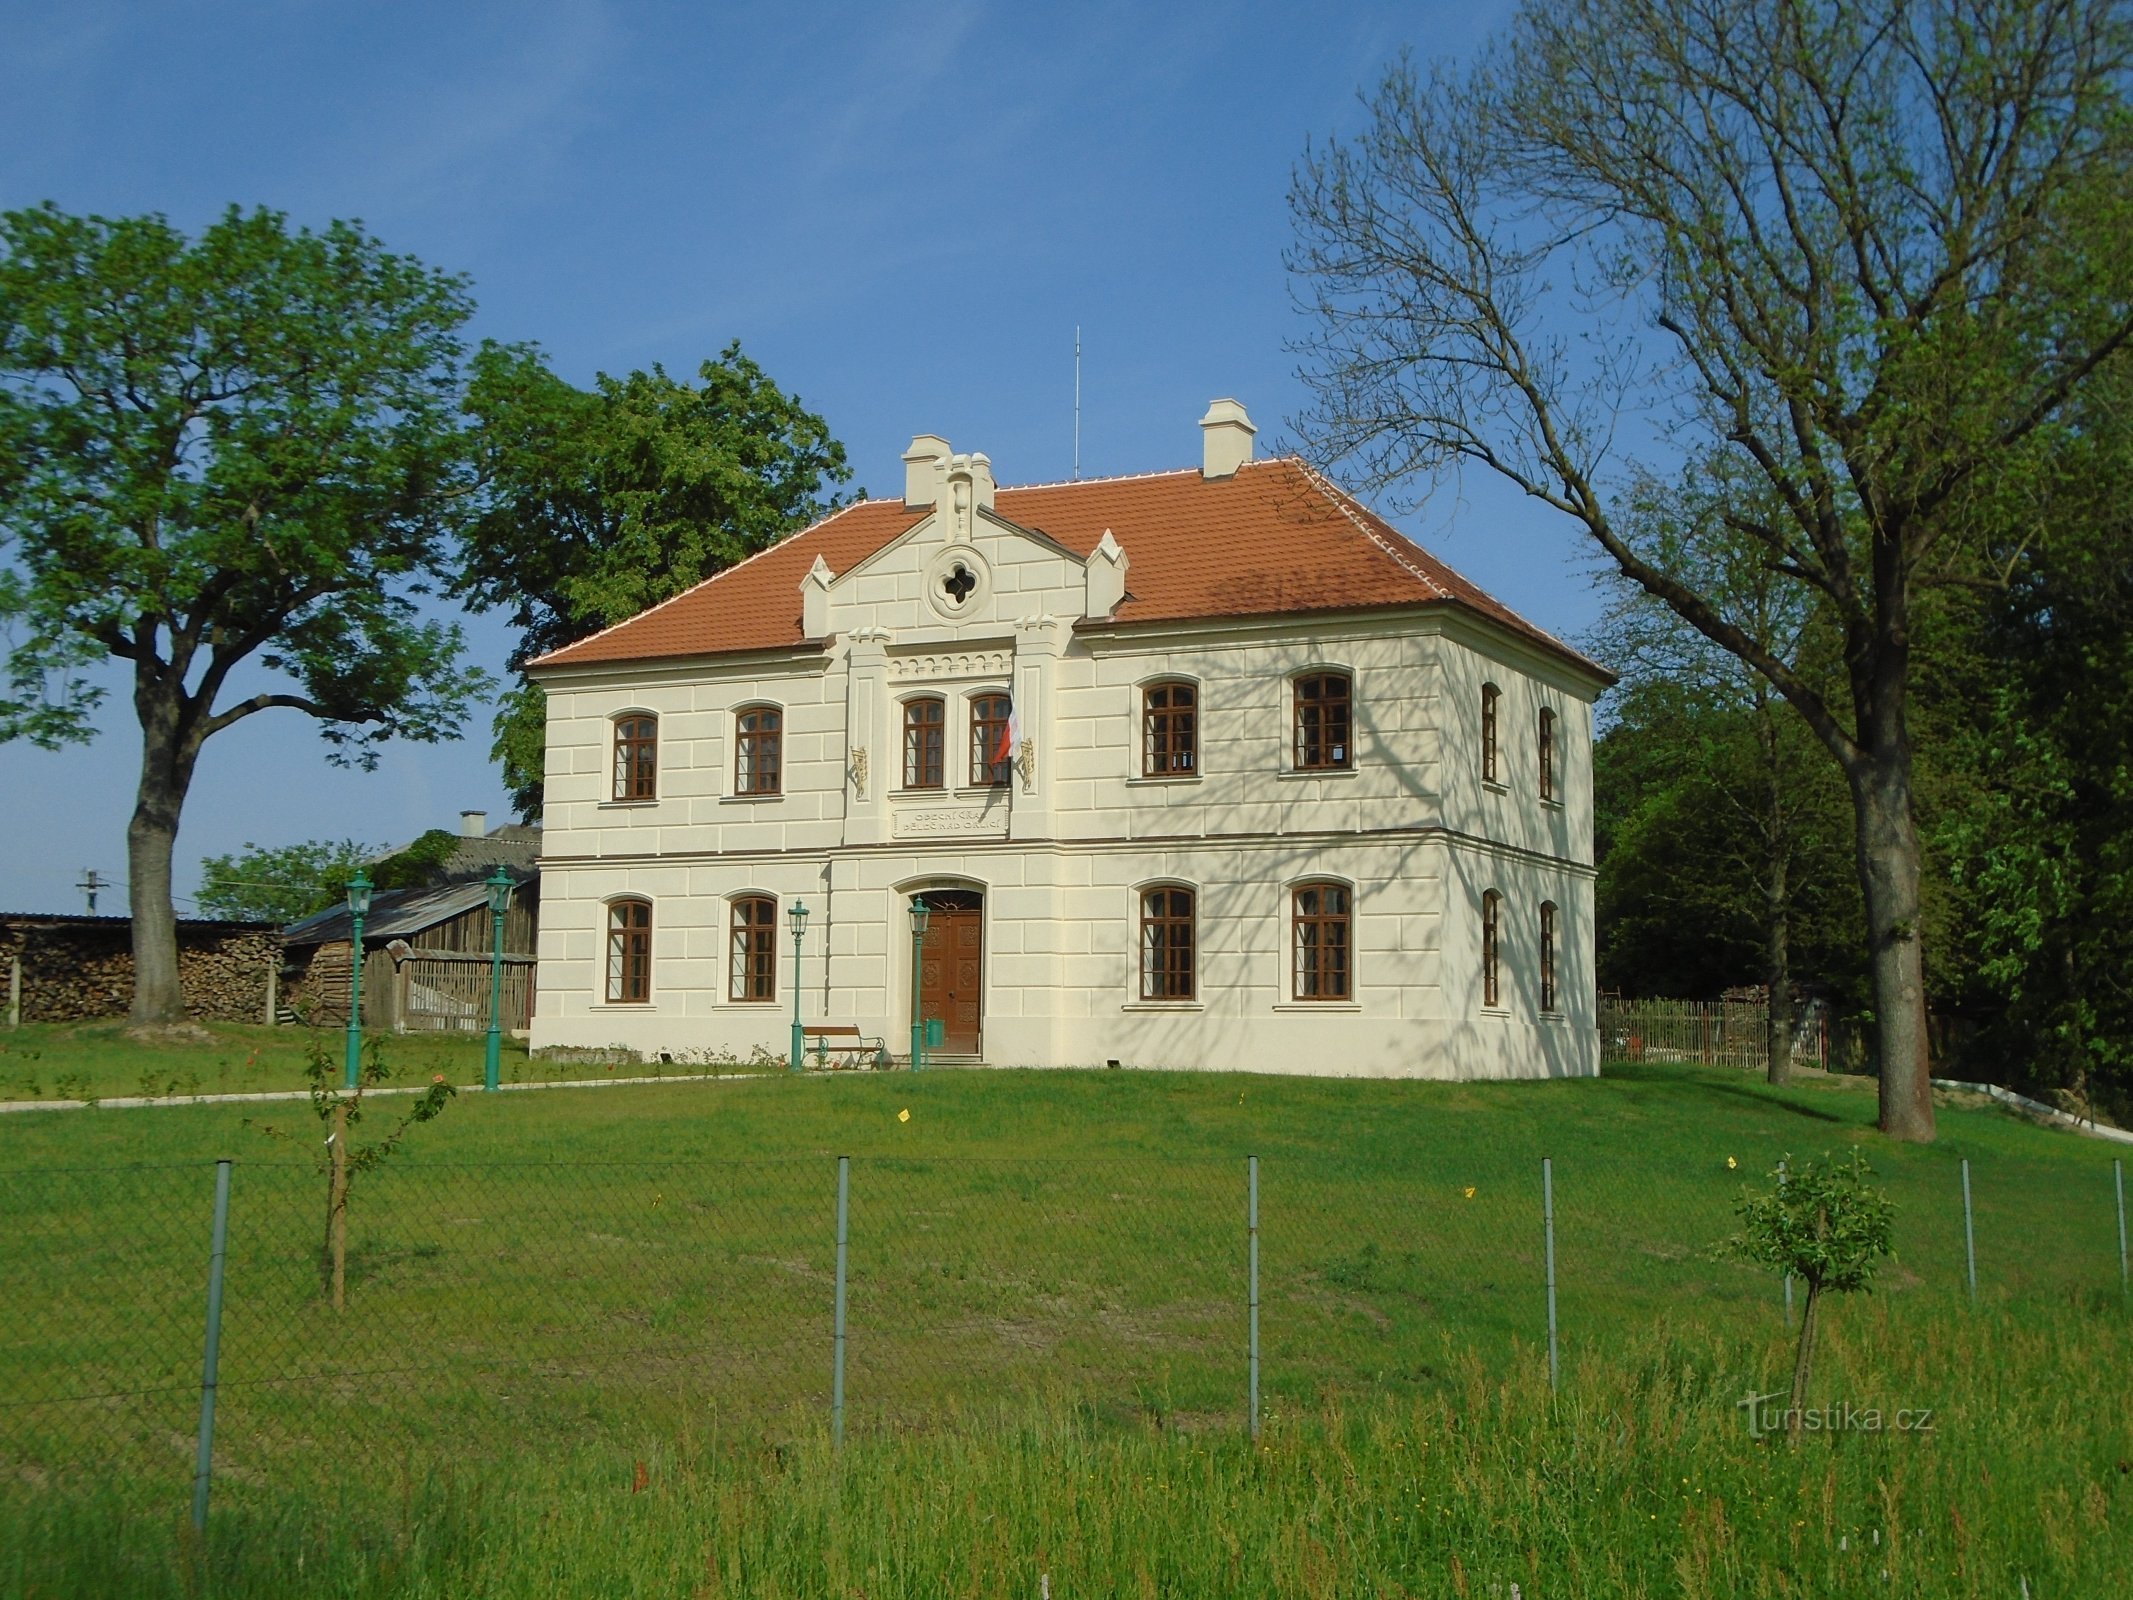 Trường truyền giáo cũ số 10 (Běleč nad Orlicí)